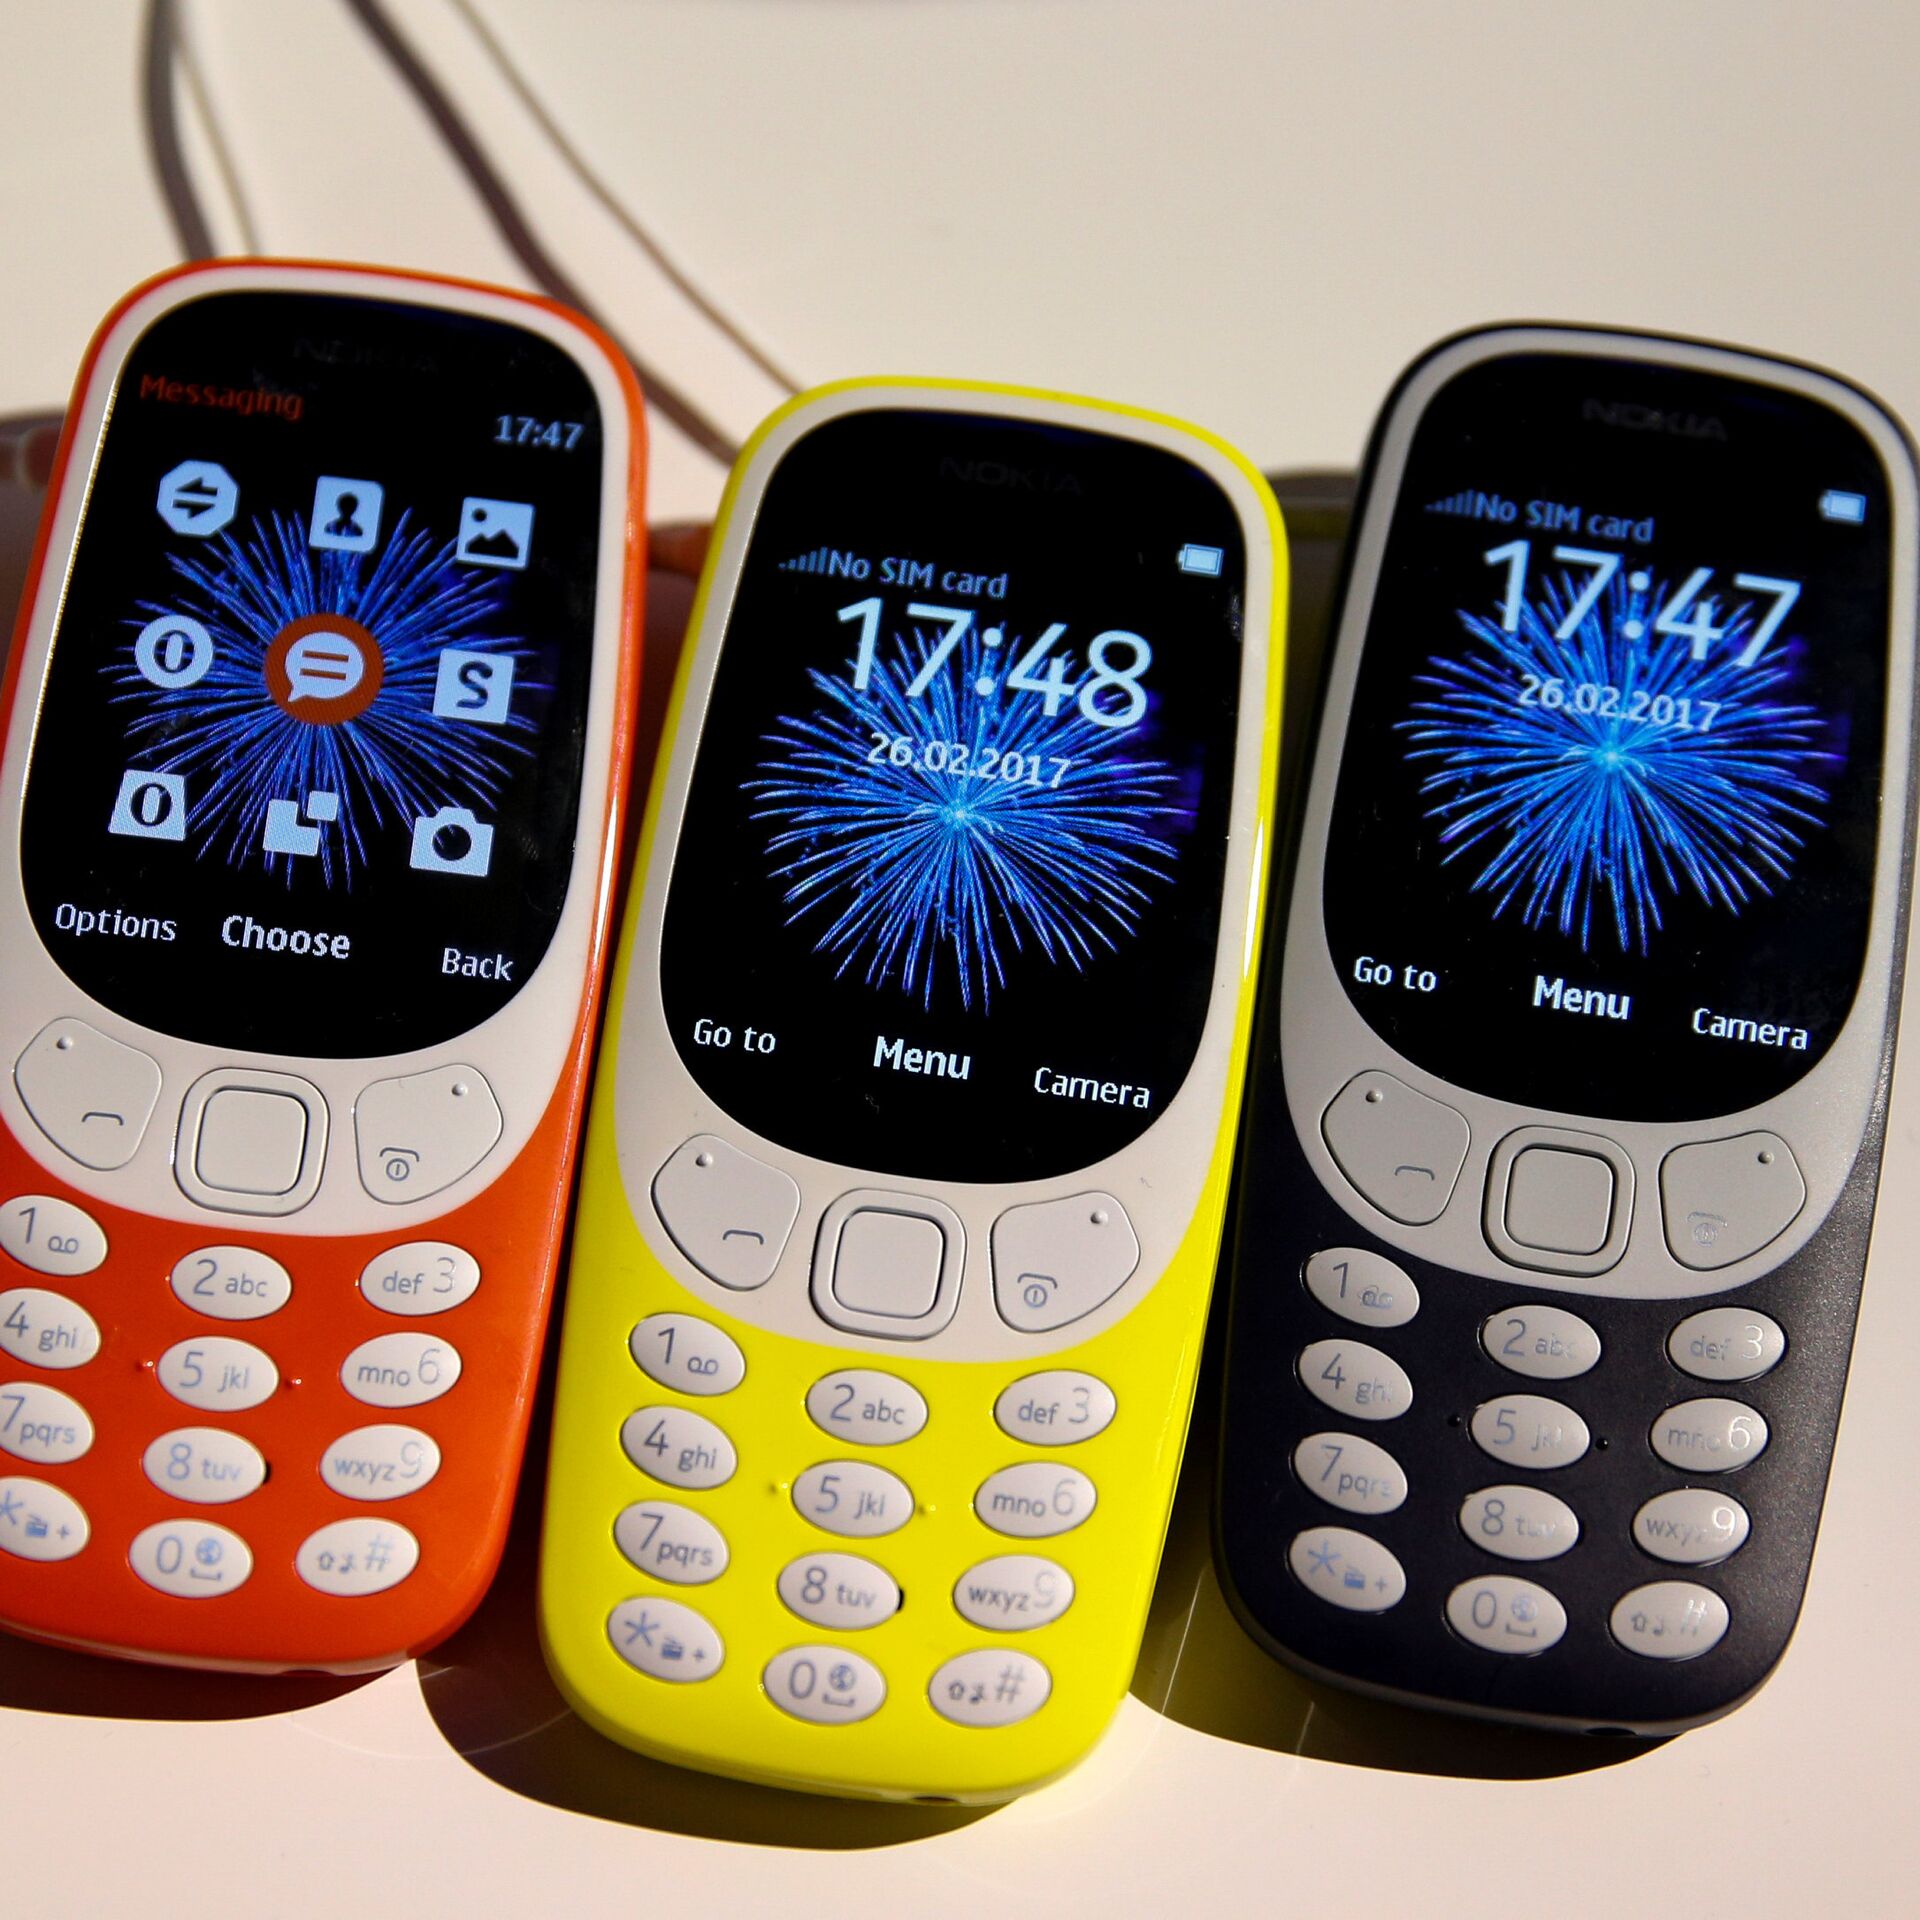 Vuelve el móvil 'indestructible' de Nokia - La Opinión de Murcia